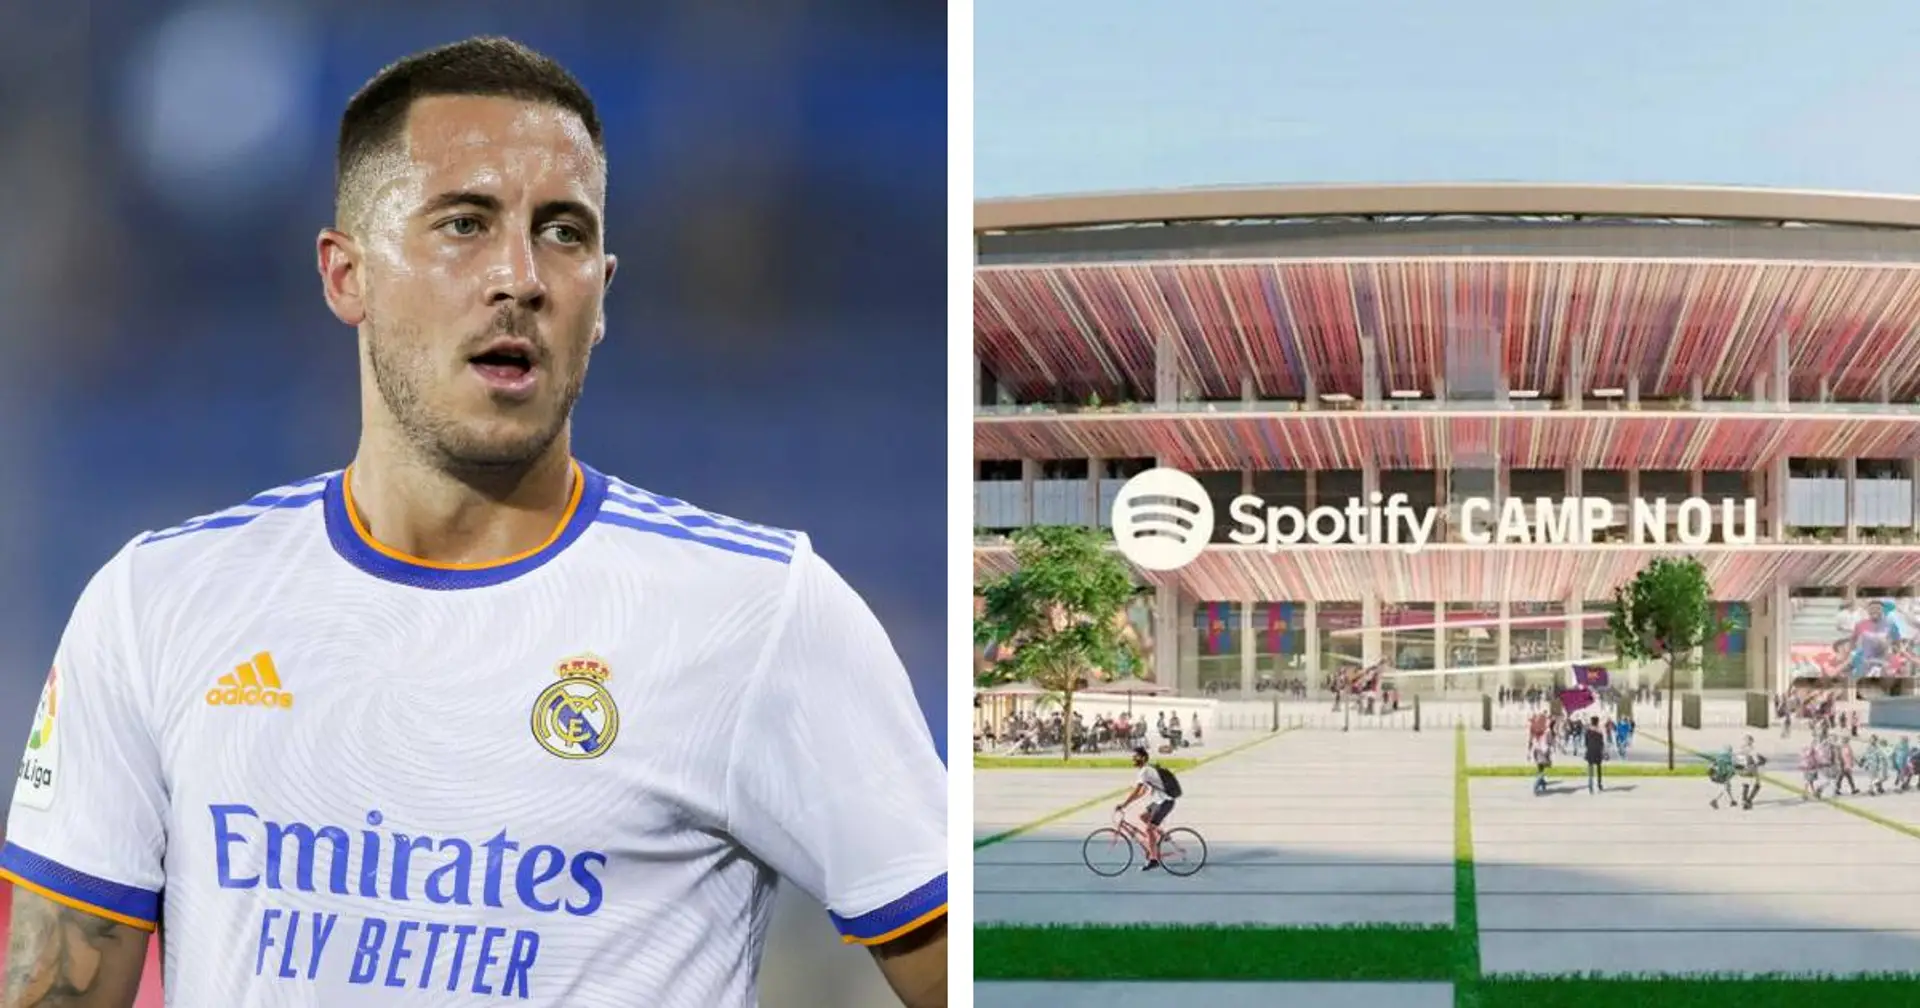 Camp Nou wird umbenannt, Hazard zu Arsenal: 4 Top-News im Weltfußball, die ihr verpassen konntet